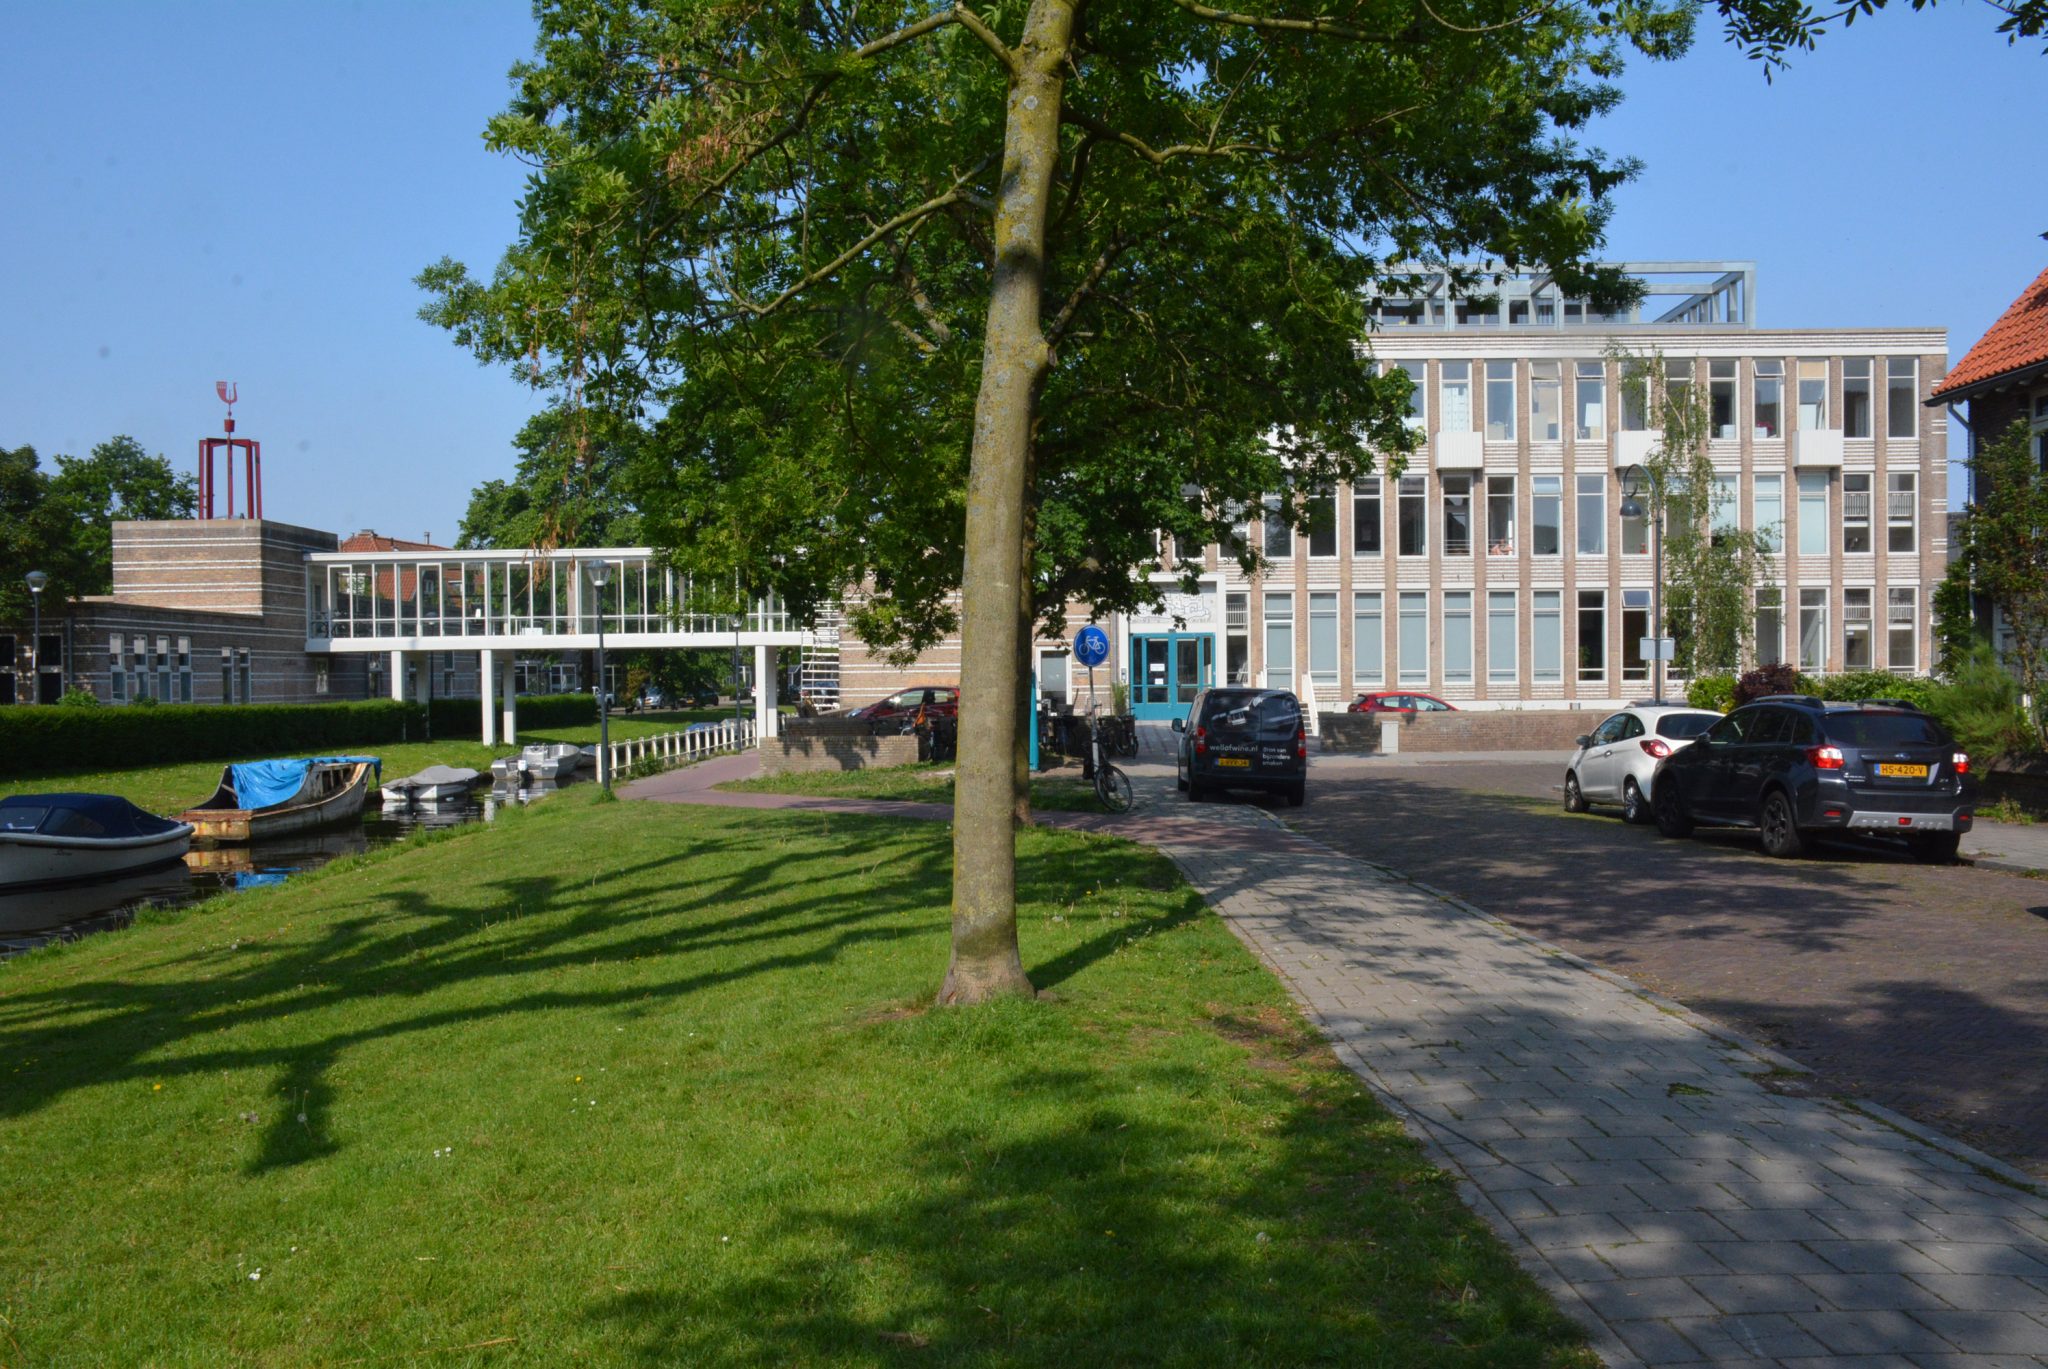 Mons Aurea was een huishoudschool gebouwd in 1960. Een prachtig jong Rijksmonument, getransformeerd naar appartementen in 2018